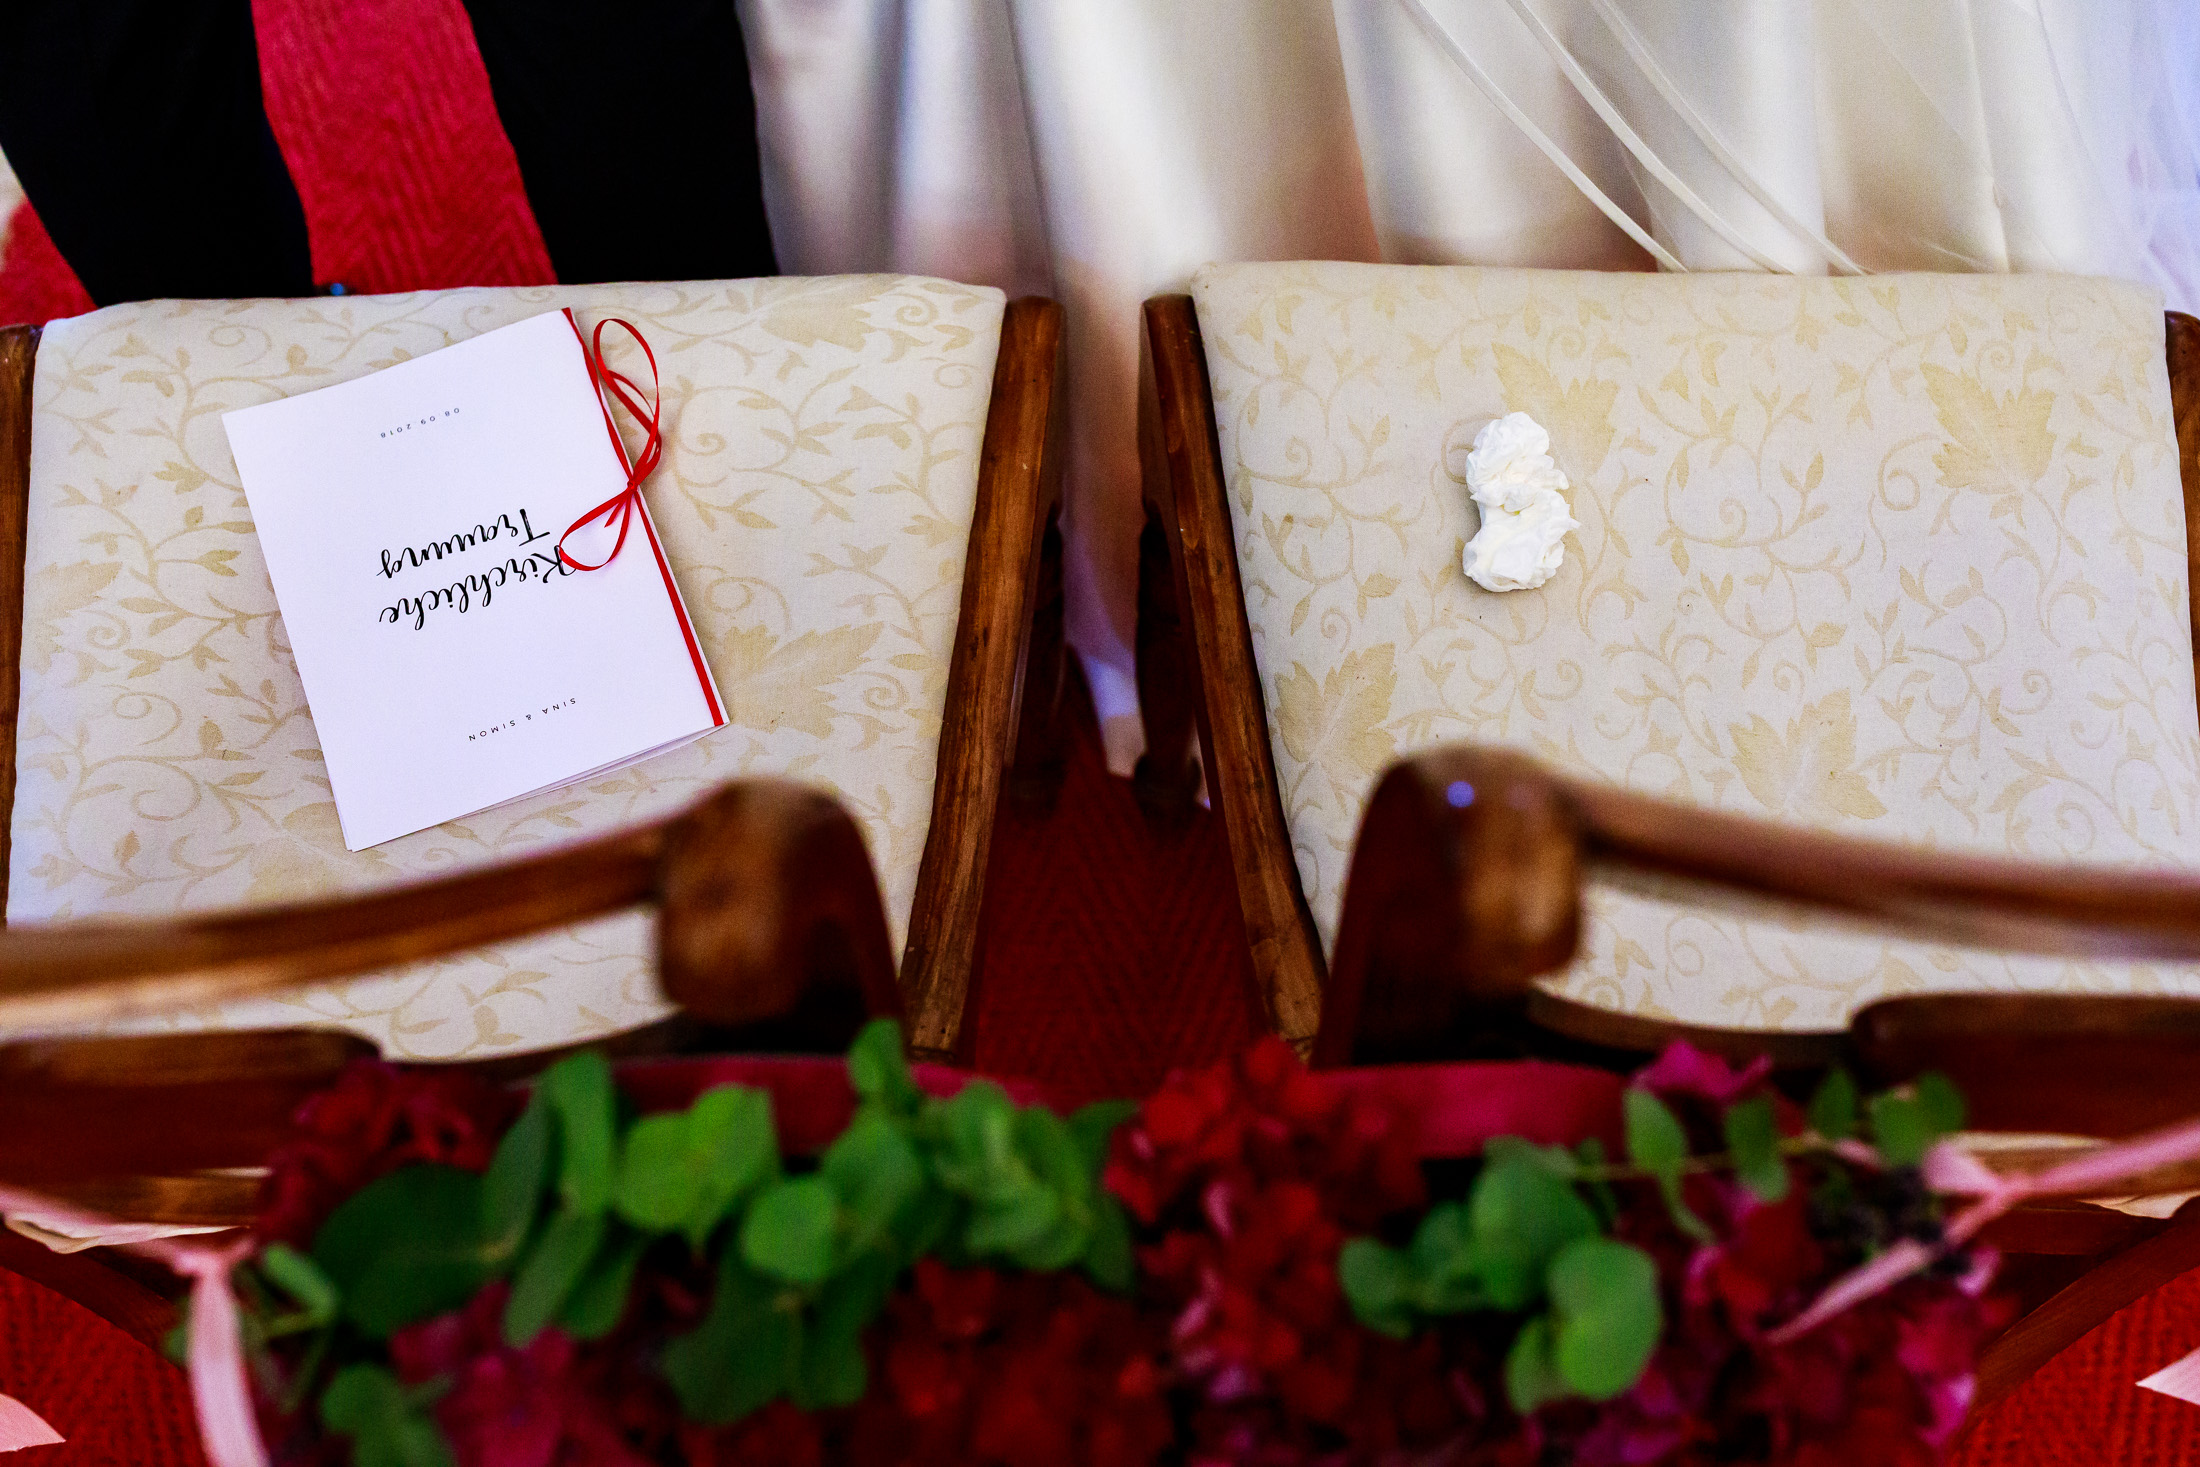 Trouwceremonie kerk | Trouwen in een kerk | Journalistieke trouwfotografie | Ongeposeerde trouwfotografie | Zwart wit trouwfoto | Let Me Tell Your Story